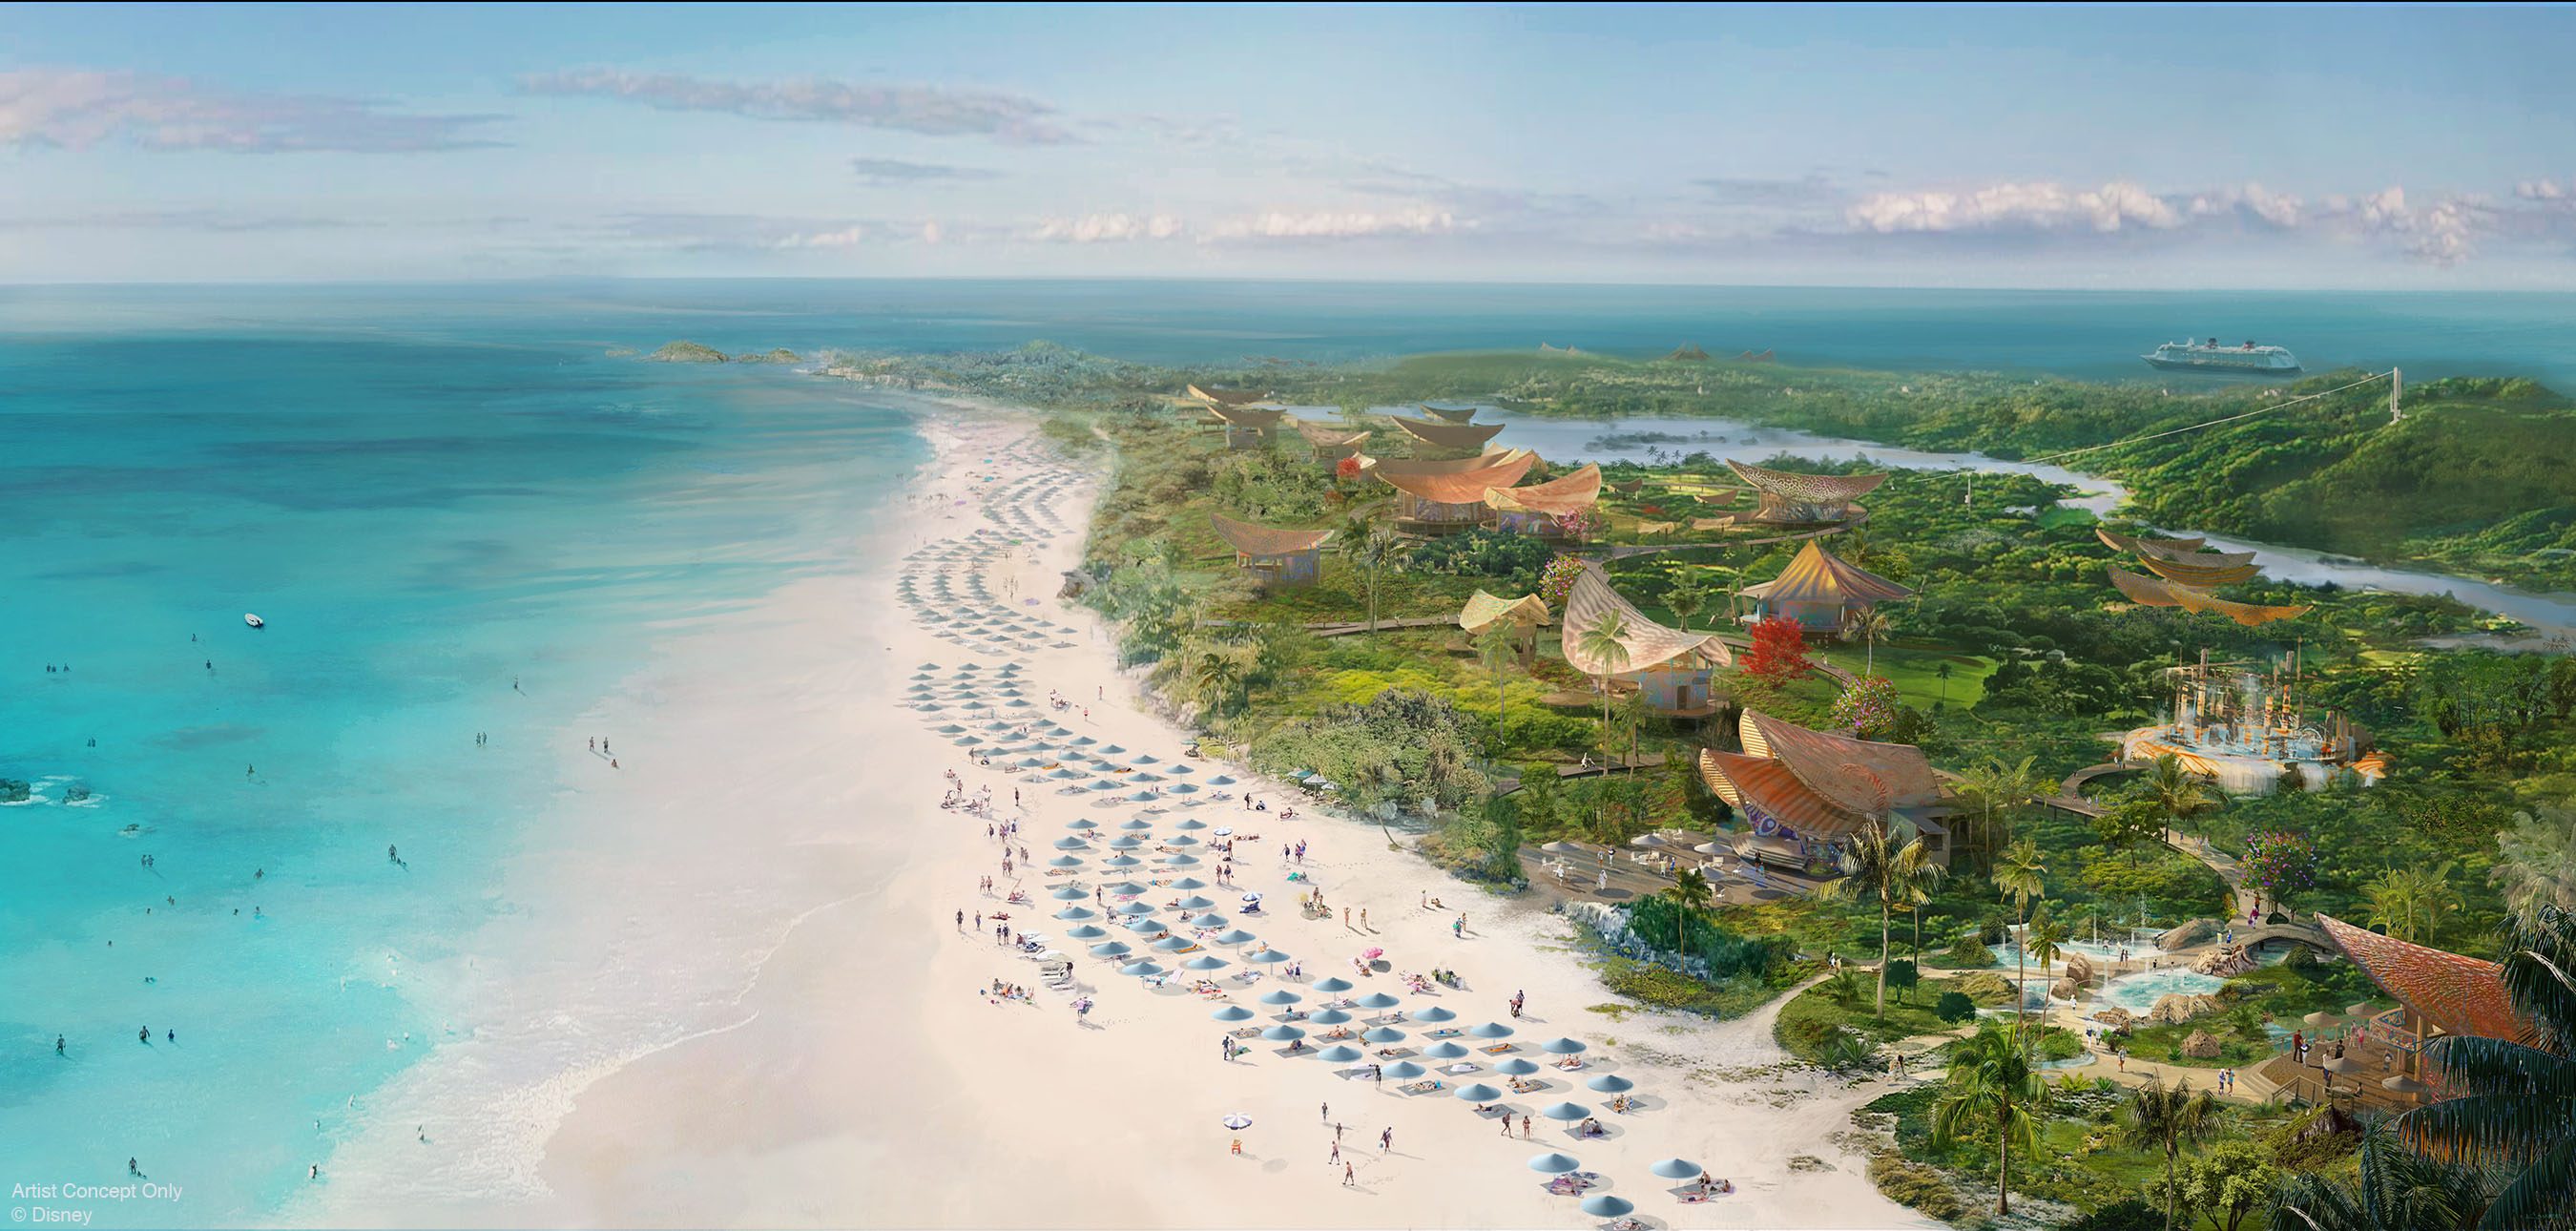 Disney finalmente iniciará construção de novo destino nas Bahamas